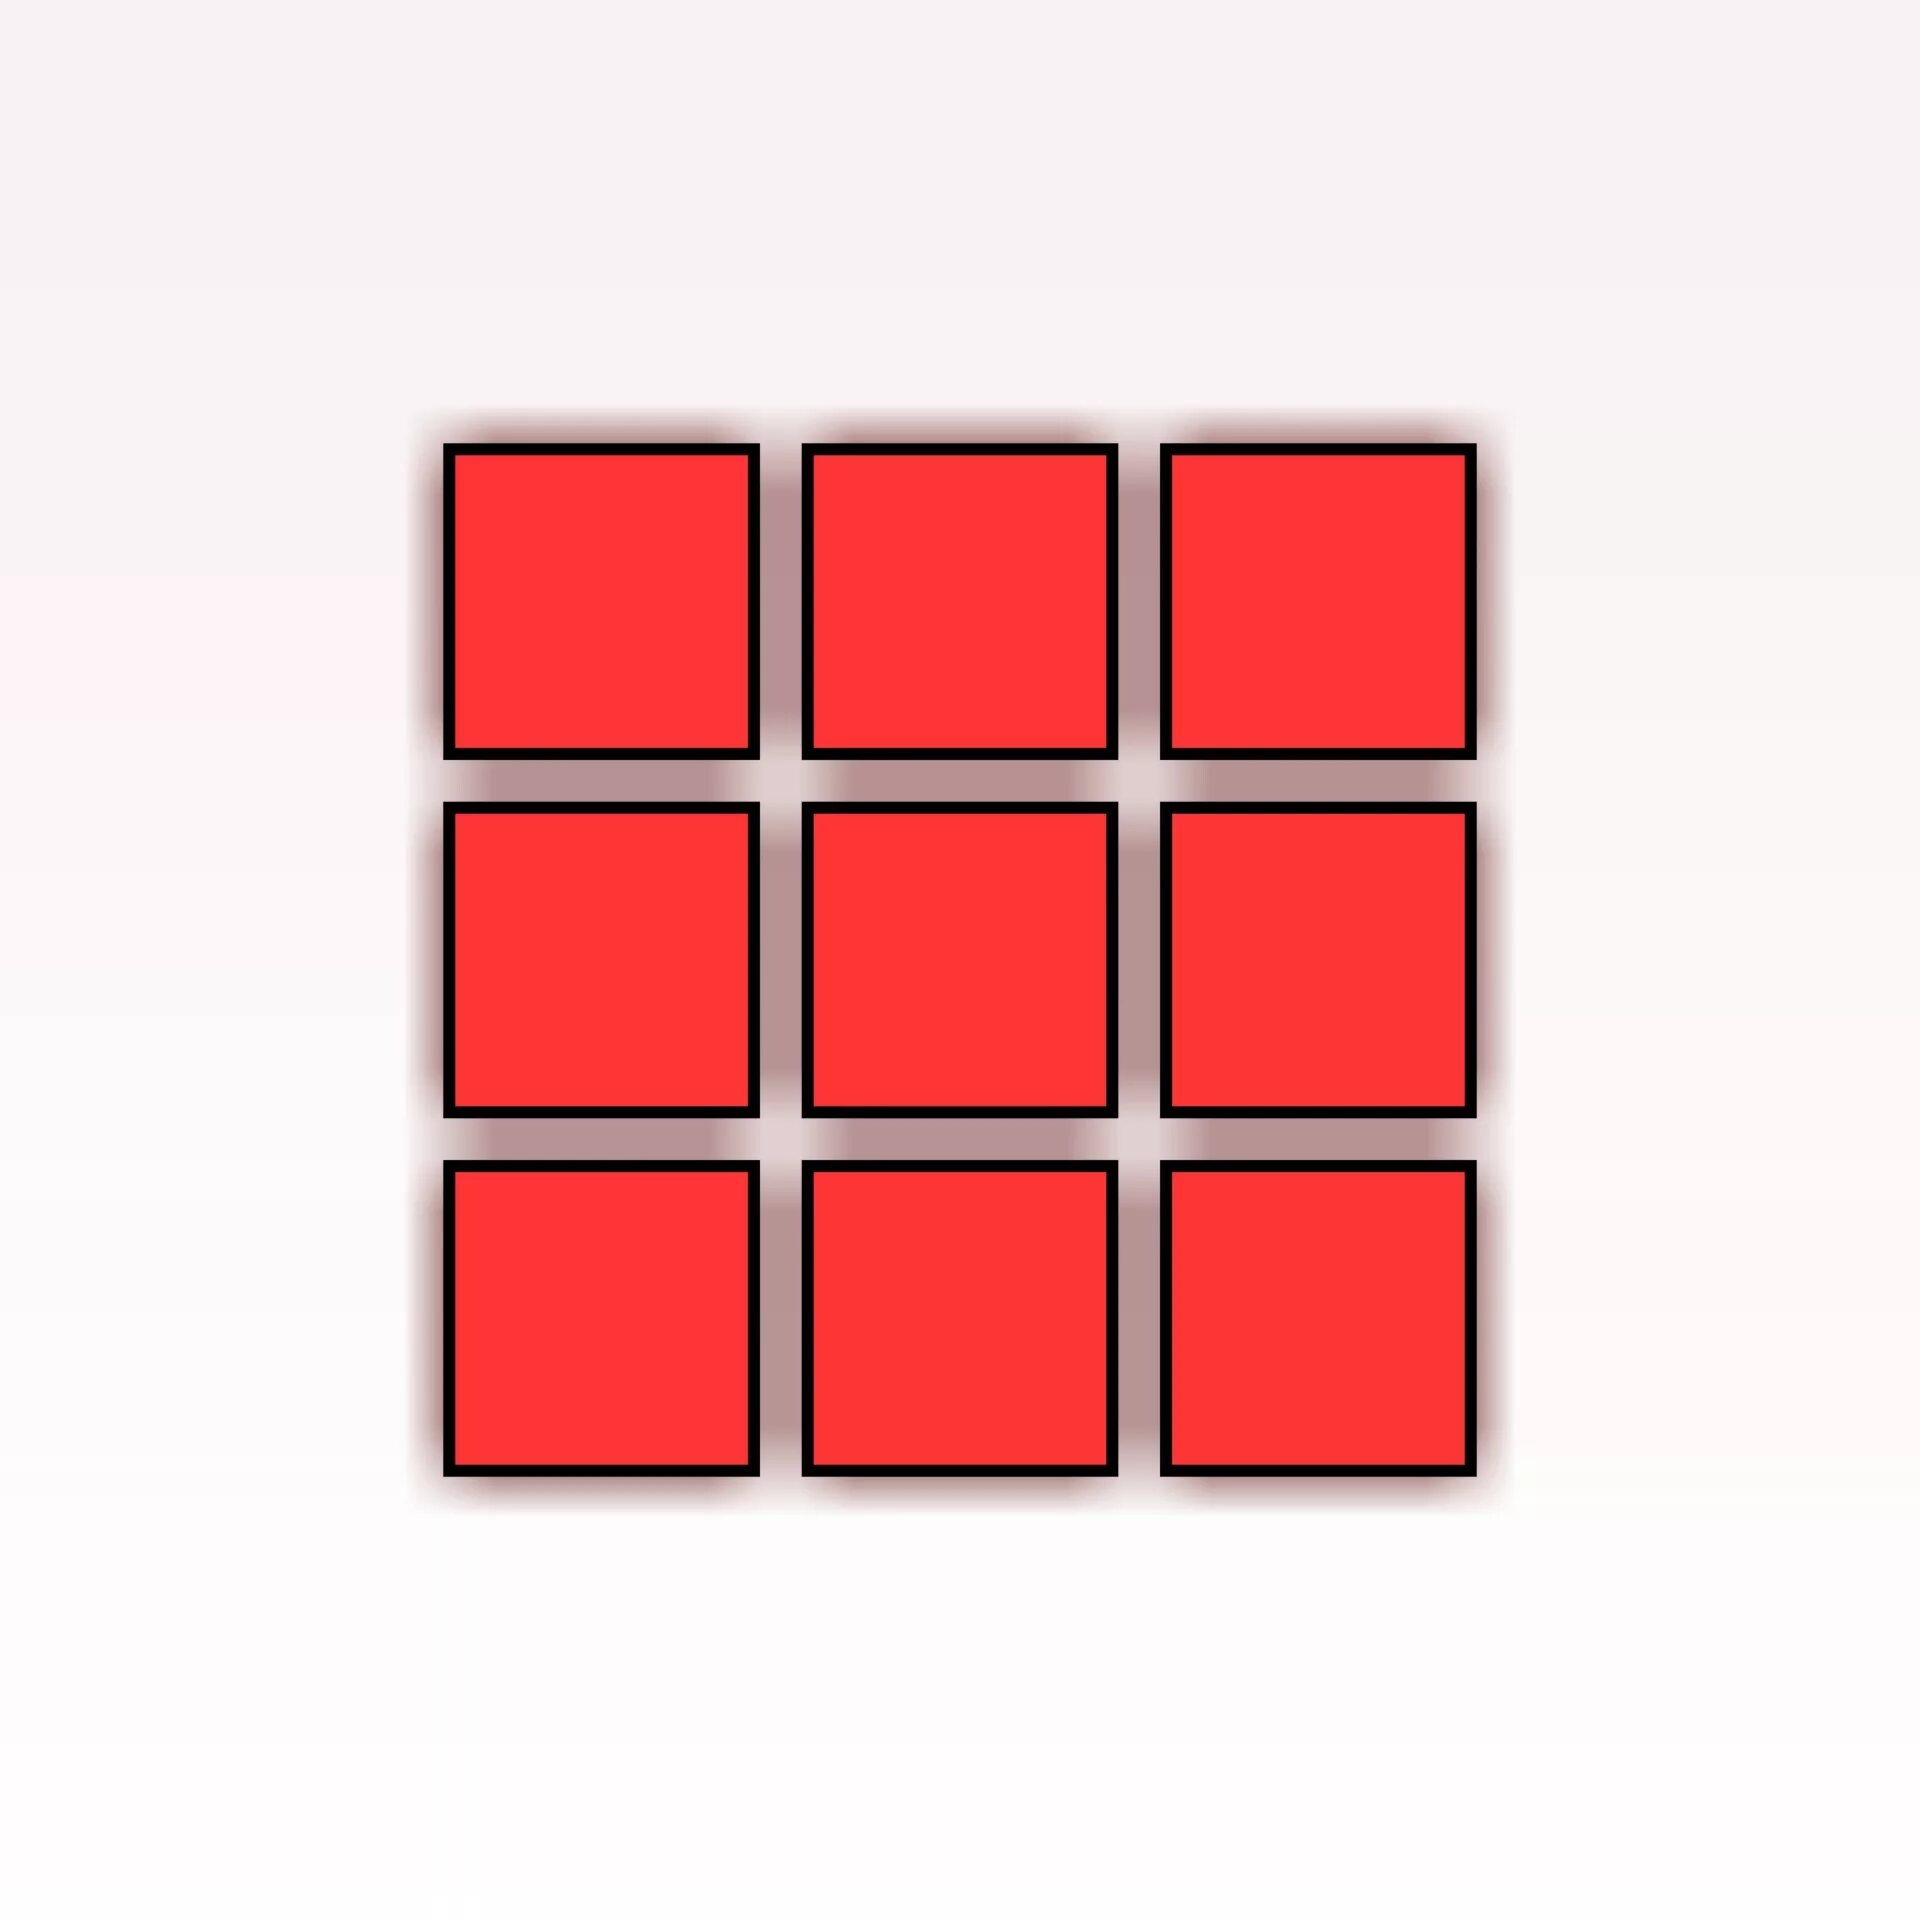 Звуки квадратики. Красный квадрат. Красный квадратик. Квадраты раздаточный материал. Красный квадрат на белом фоне.